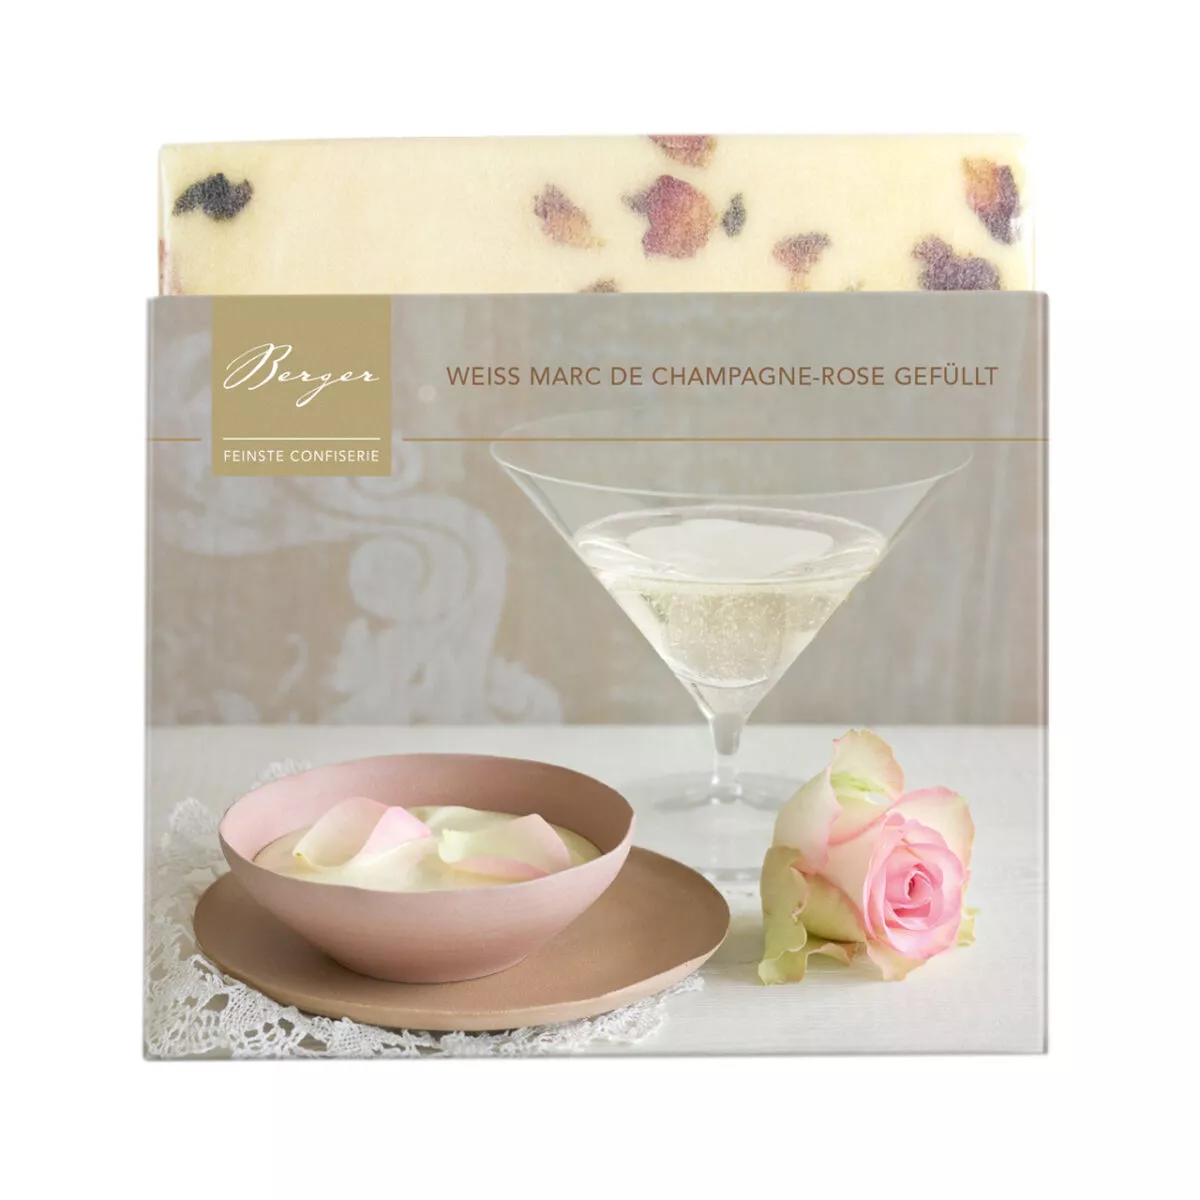 Berger Schokolade Weiss Marc de Champagne-Rose gefüllt 100g Eine cremig-elegante Marc-de-Champagne-Ganache mit Rosenöl verfeinert findet sich in weißer Bio-Schokolade. Bestreut mit Rosenblüten.